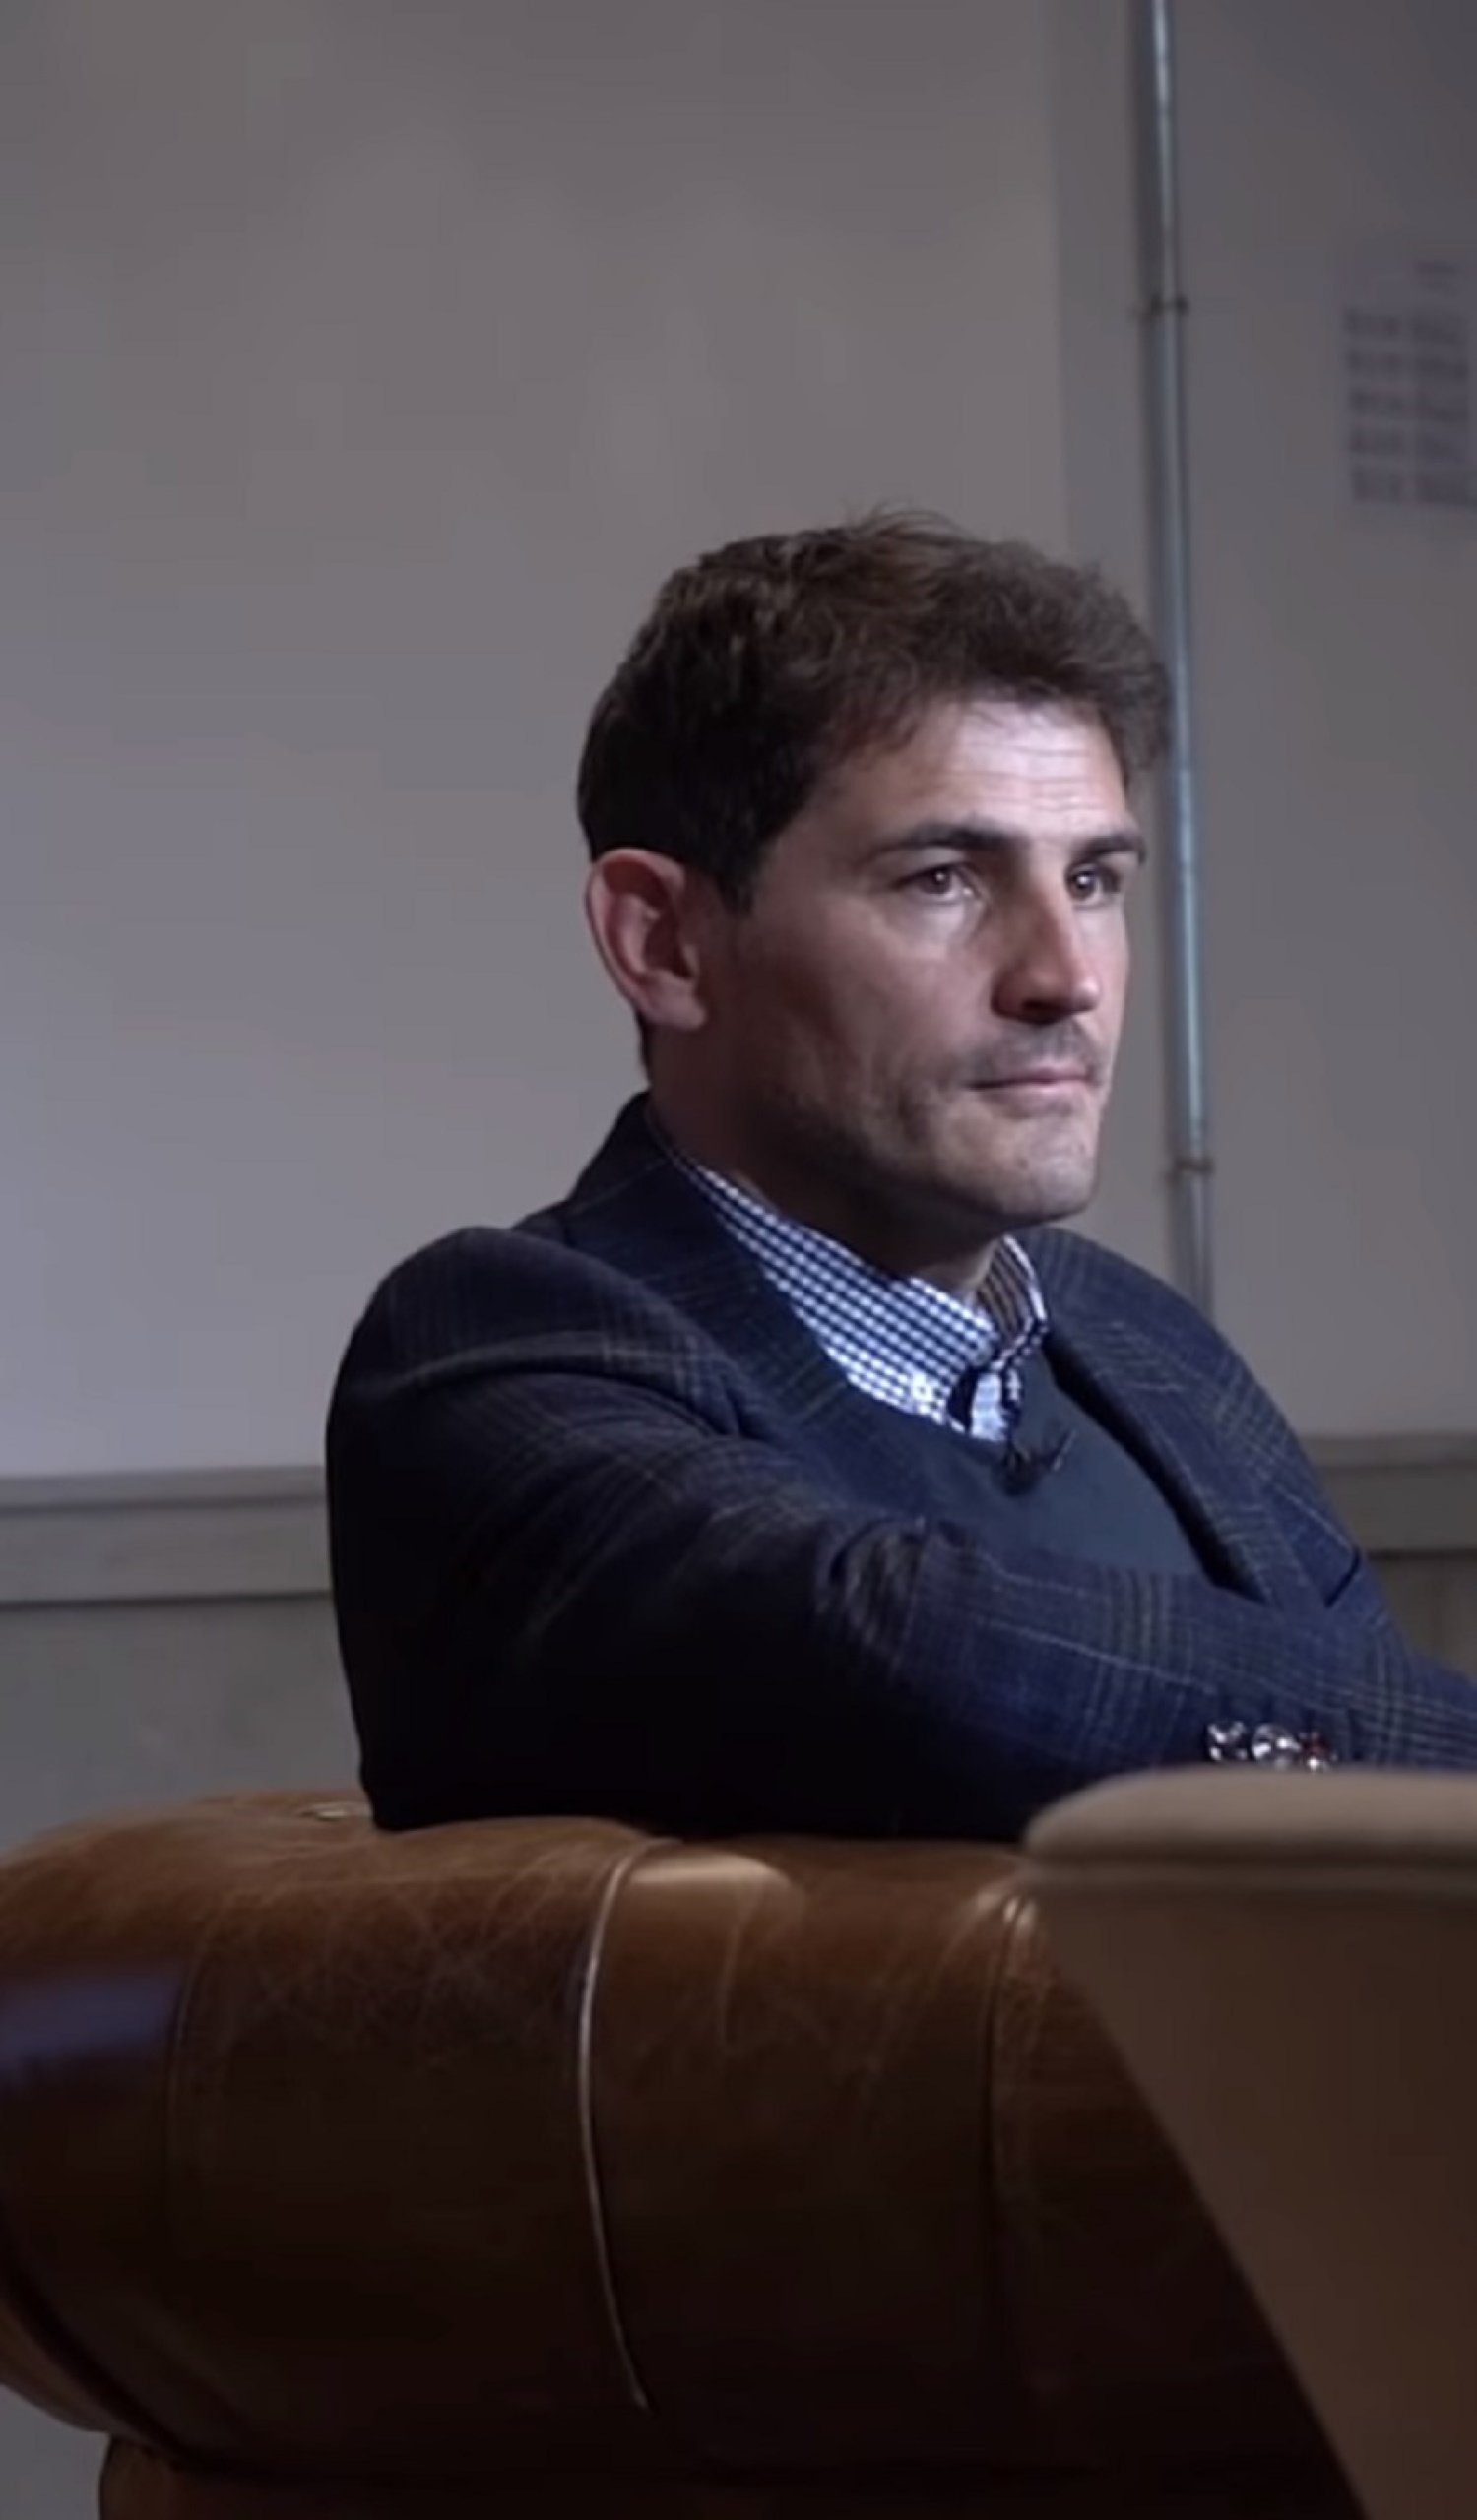 La táctica de Iker Casillas para ligar con famosas de la tele